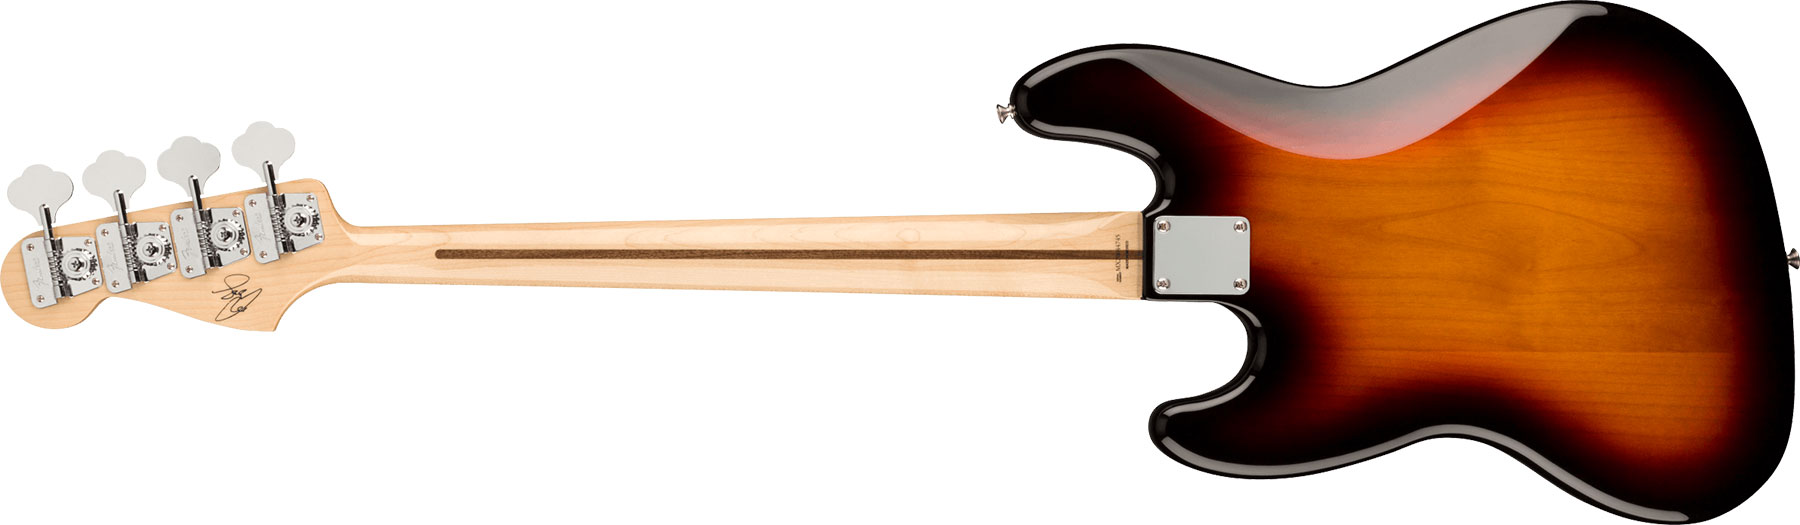 Fender Geddy Lee Jazz Bass Signature Mex Mn - 3-color Sunburst - Bajo eléctrico de cuerpo sólido - Variation 1